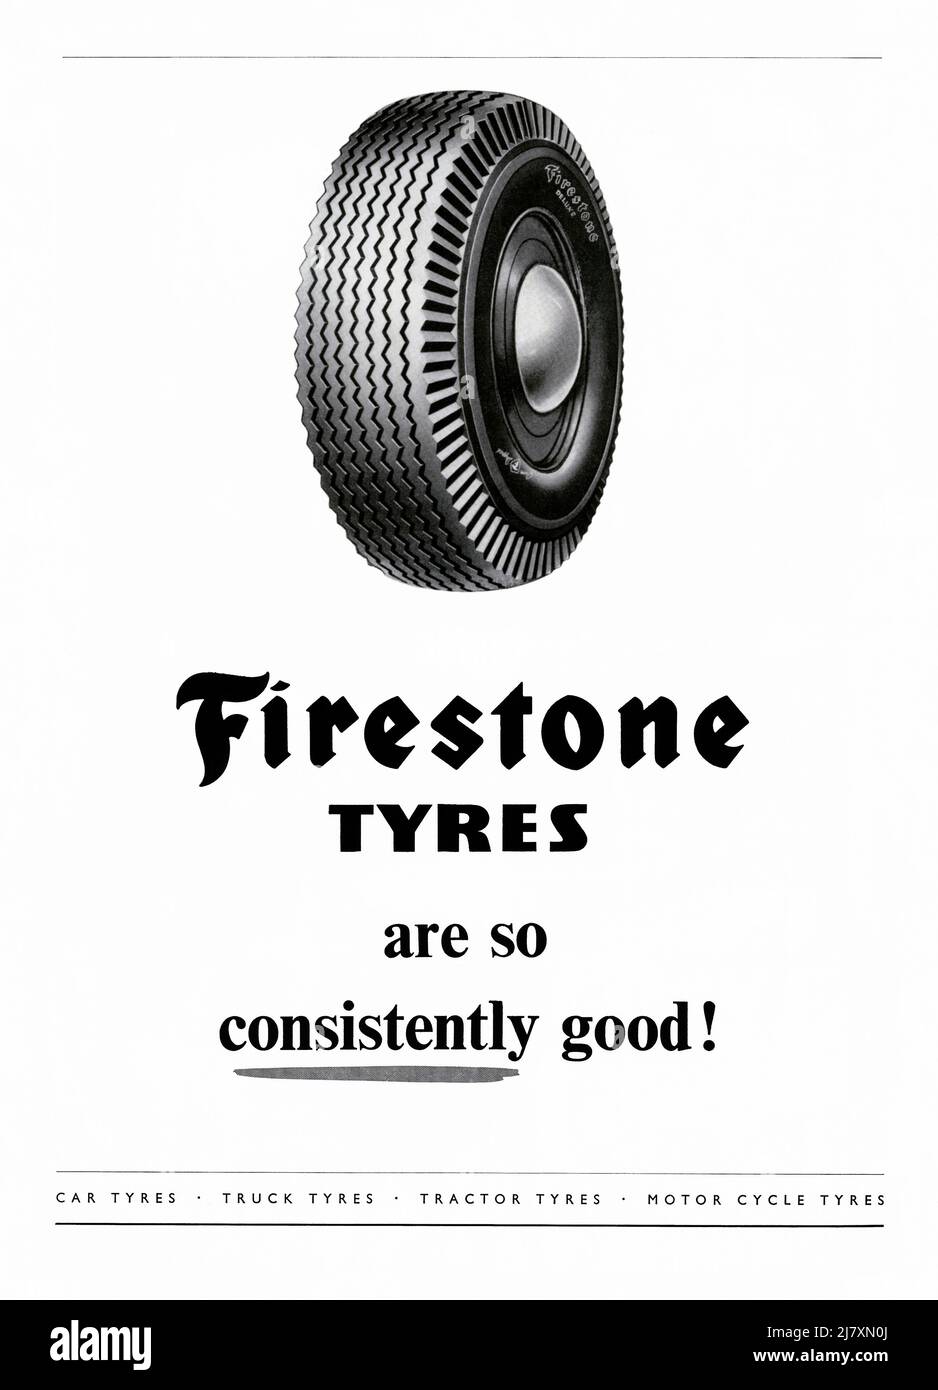 Un anuncio de 1953 para los neumáticos Firestone. El anuncio apareció en una revista publicada en el Reino Unido en junio de ese año – el número fue una edición especial, publicada para conmemorar la coronación de la reina Isabel. El anuncio menciona sus numerosos mercados: Neumáticos para automóviles, camiones, tractores y ciclos de motor. Firestone Tire and Rubber Company es una compañía estadounidense de neumáticos fundada por Harvey Firestone en 1900. Se convirtió en el proveedor original de los automóviles de Ford Motor Company. En 1988 la compañía fue vendida a la Corporación Bridgestone Japonesa – gráficos vintage 1950s para uso editorial. Foto de stock